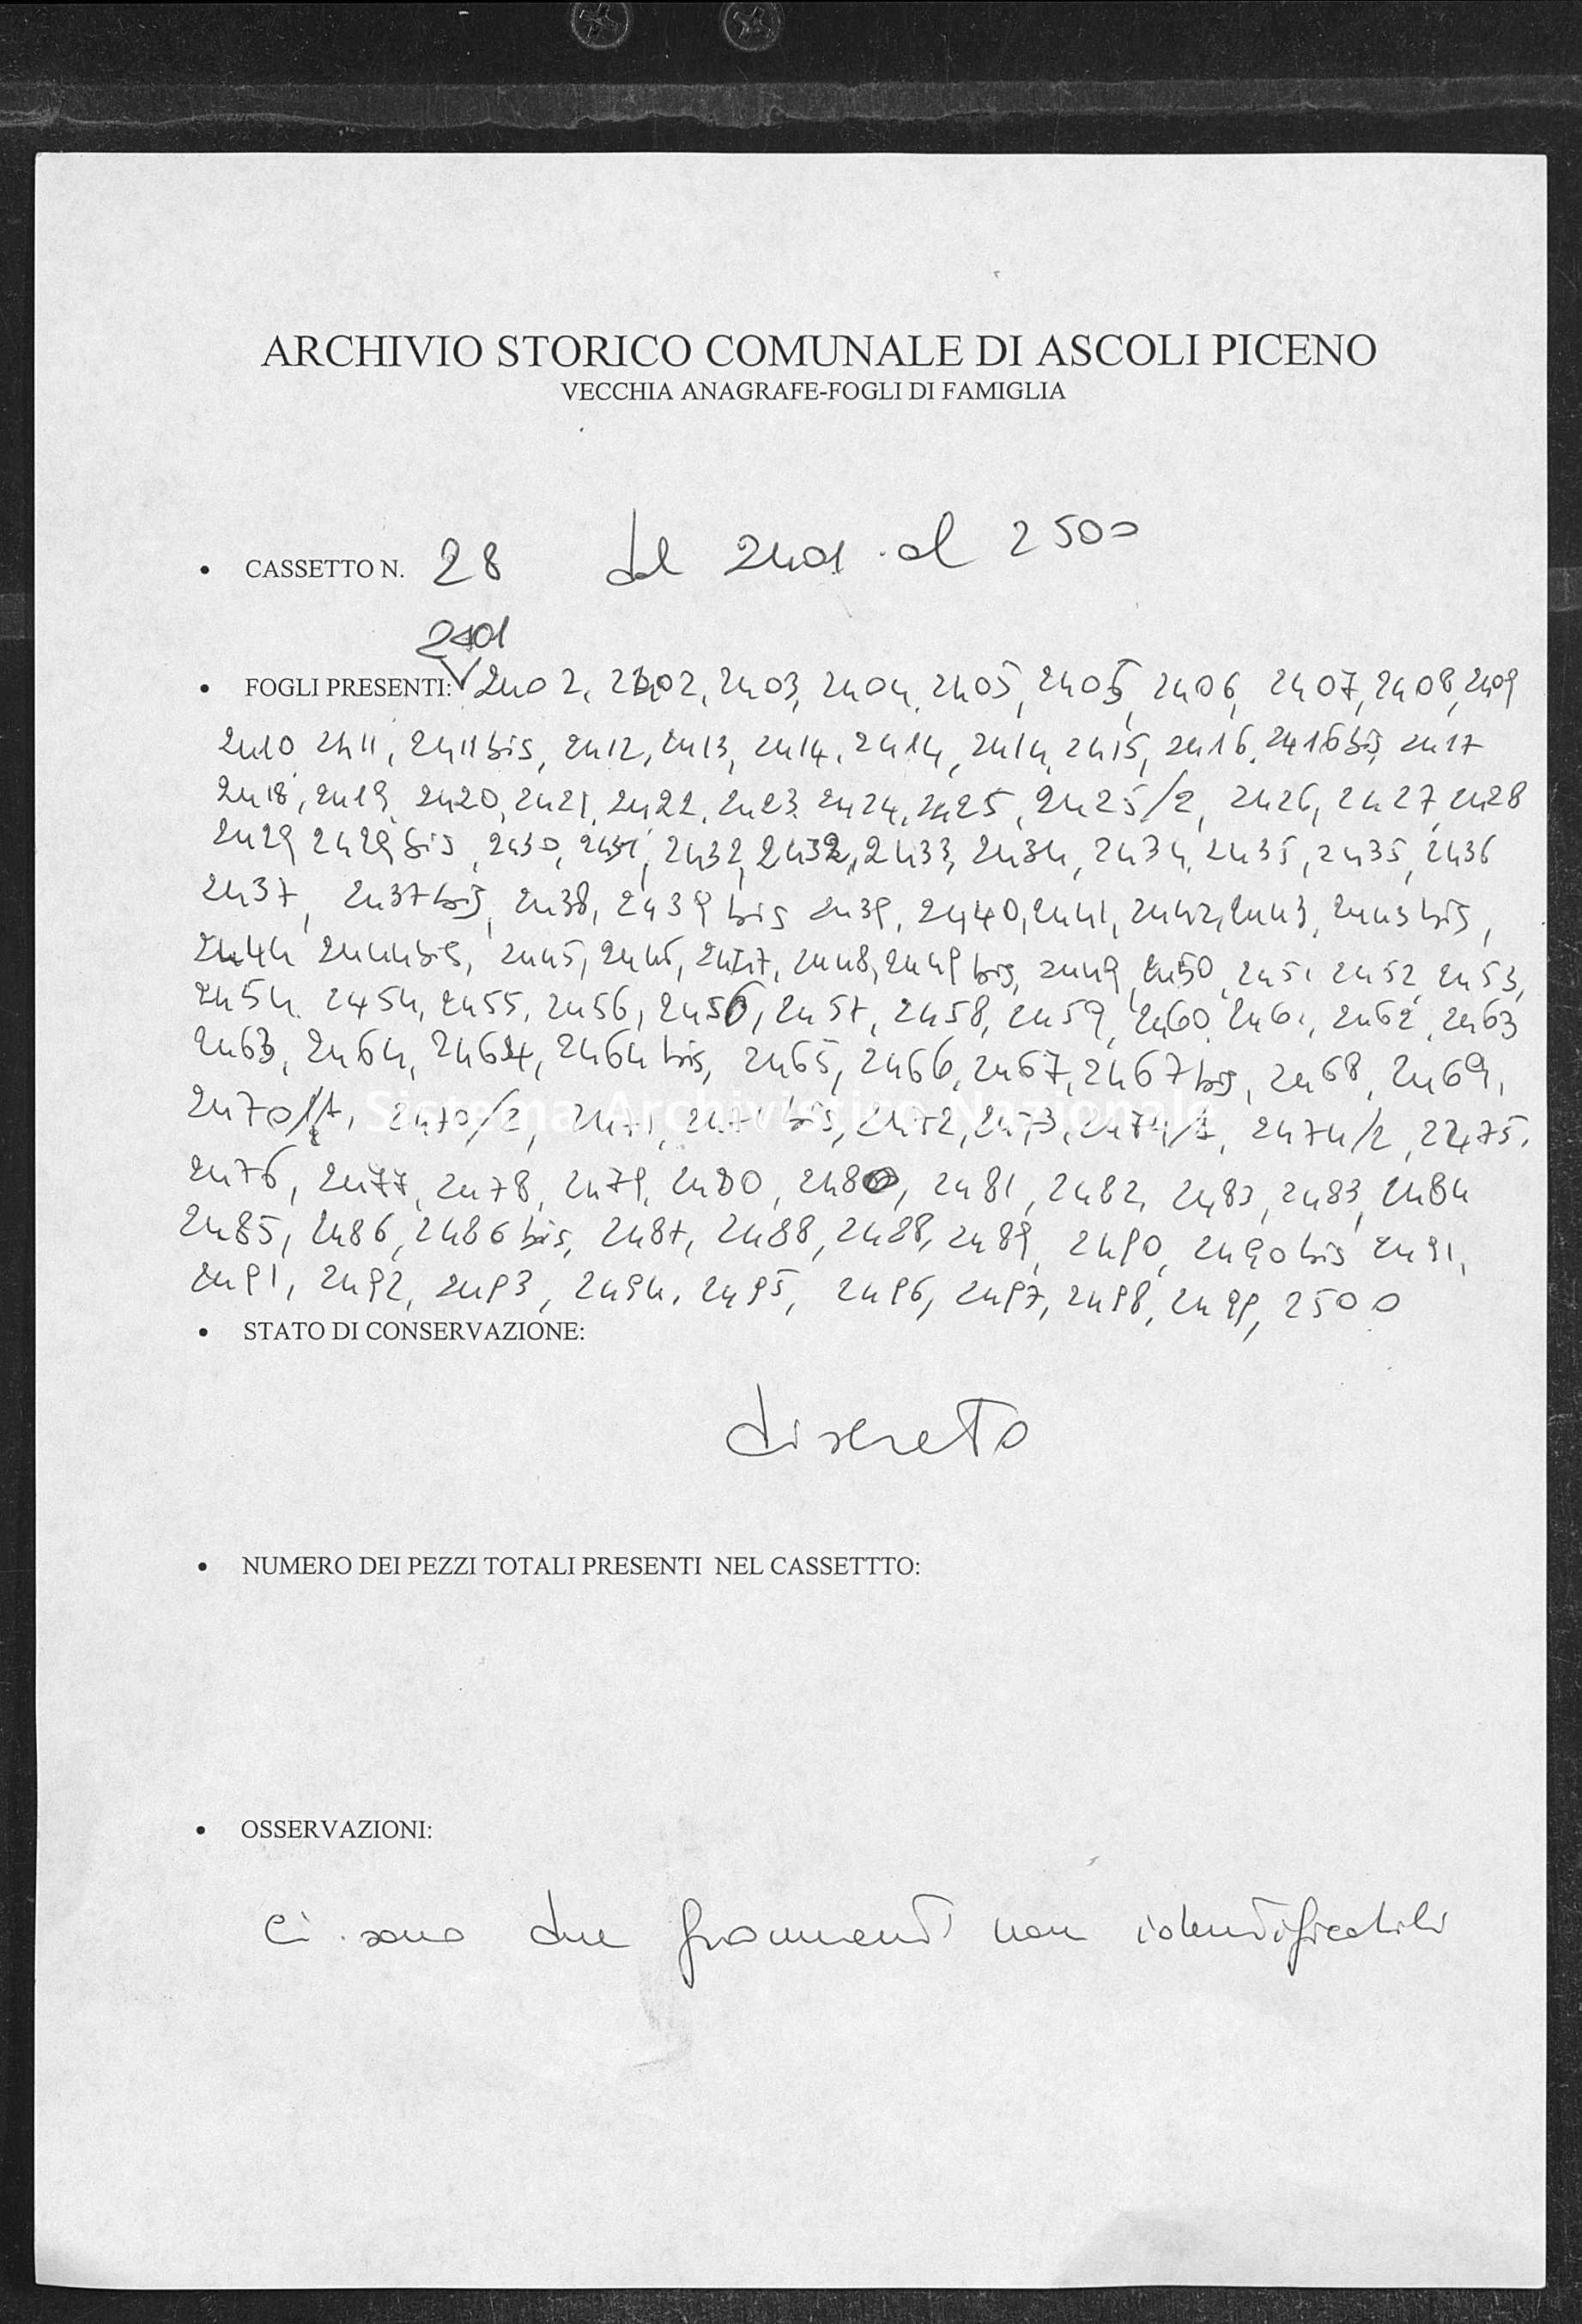 Archivio di stato di Ascoli Piceno - Stato civile italiano - Ascoli Piceno - Censimento - 1800-1880 - 28, fogli 2402-2500 -